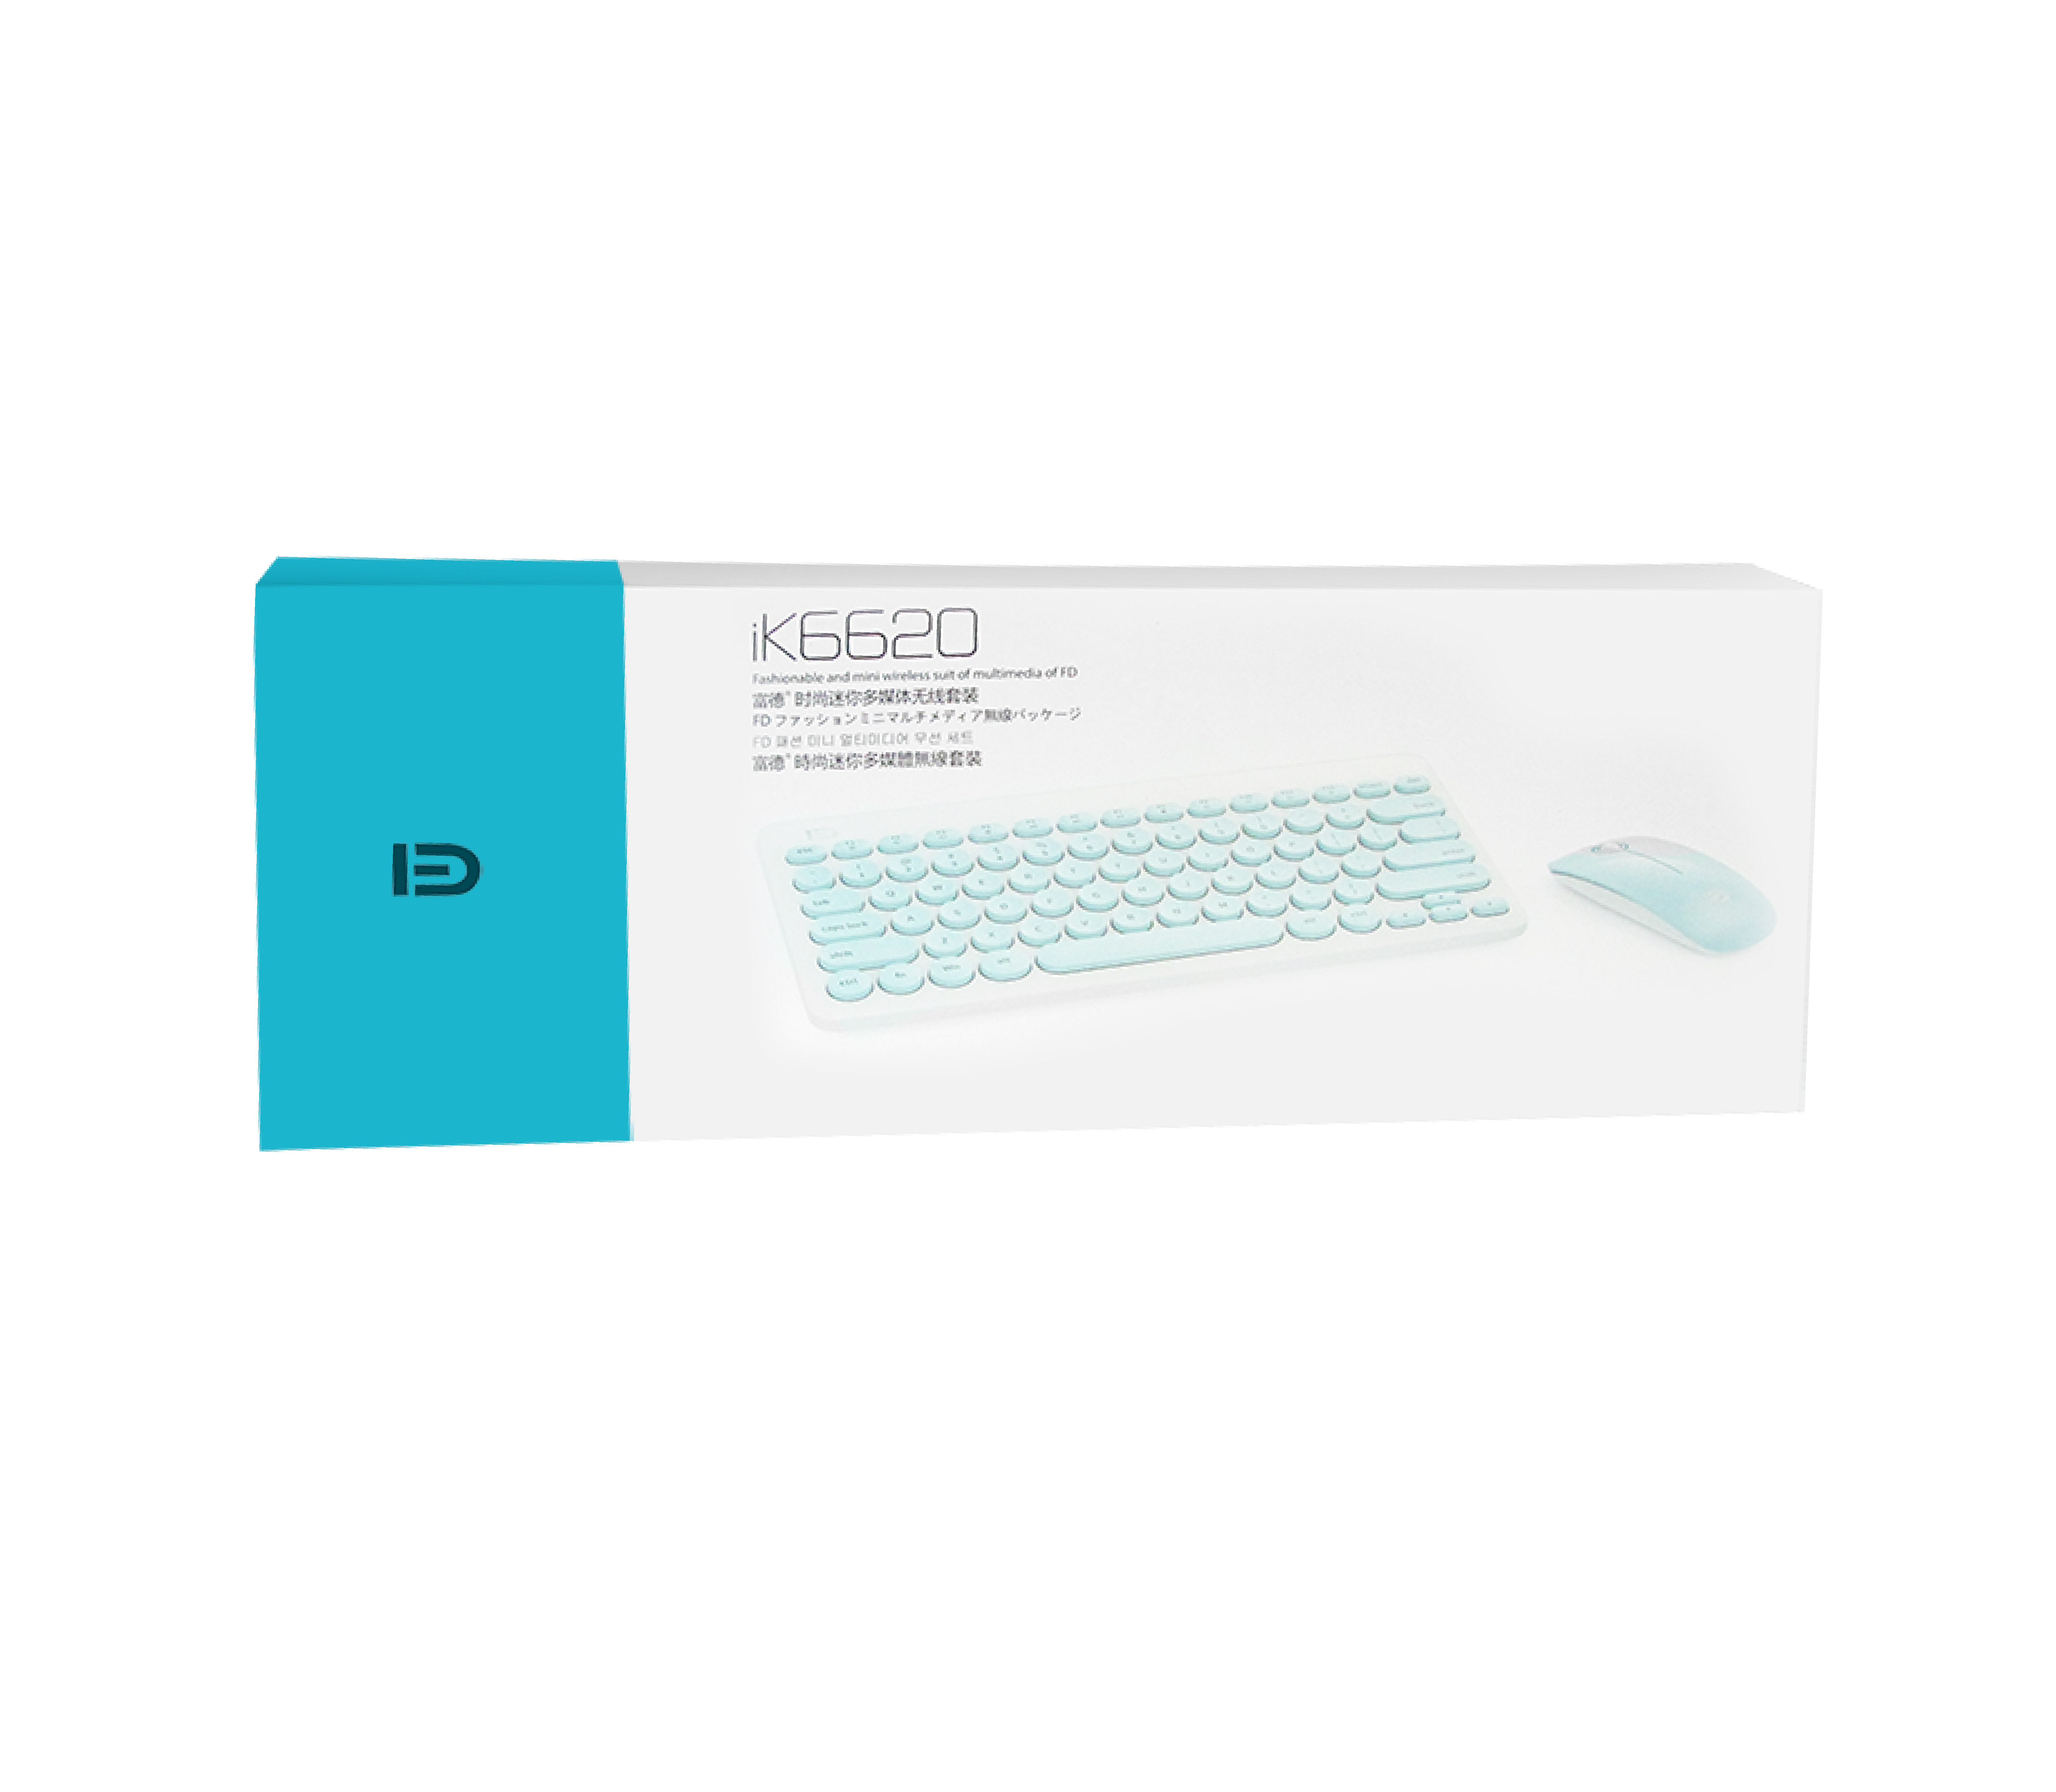 FD IK6620 Keyboard